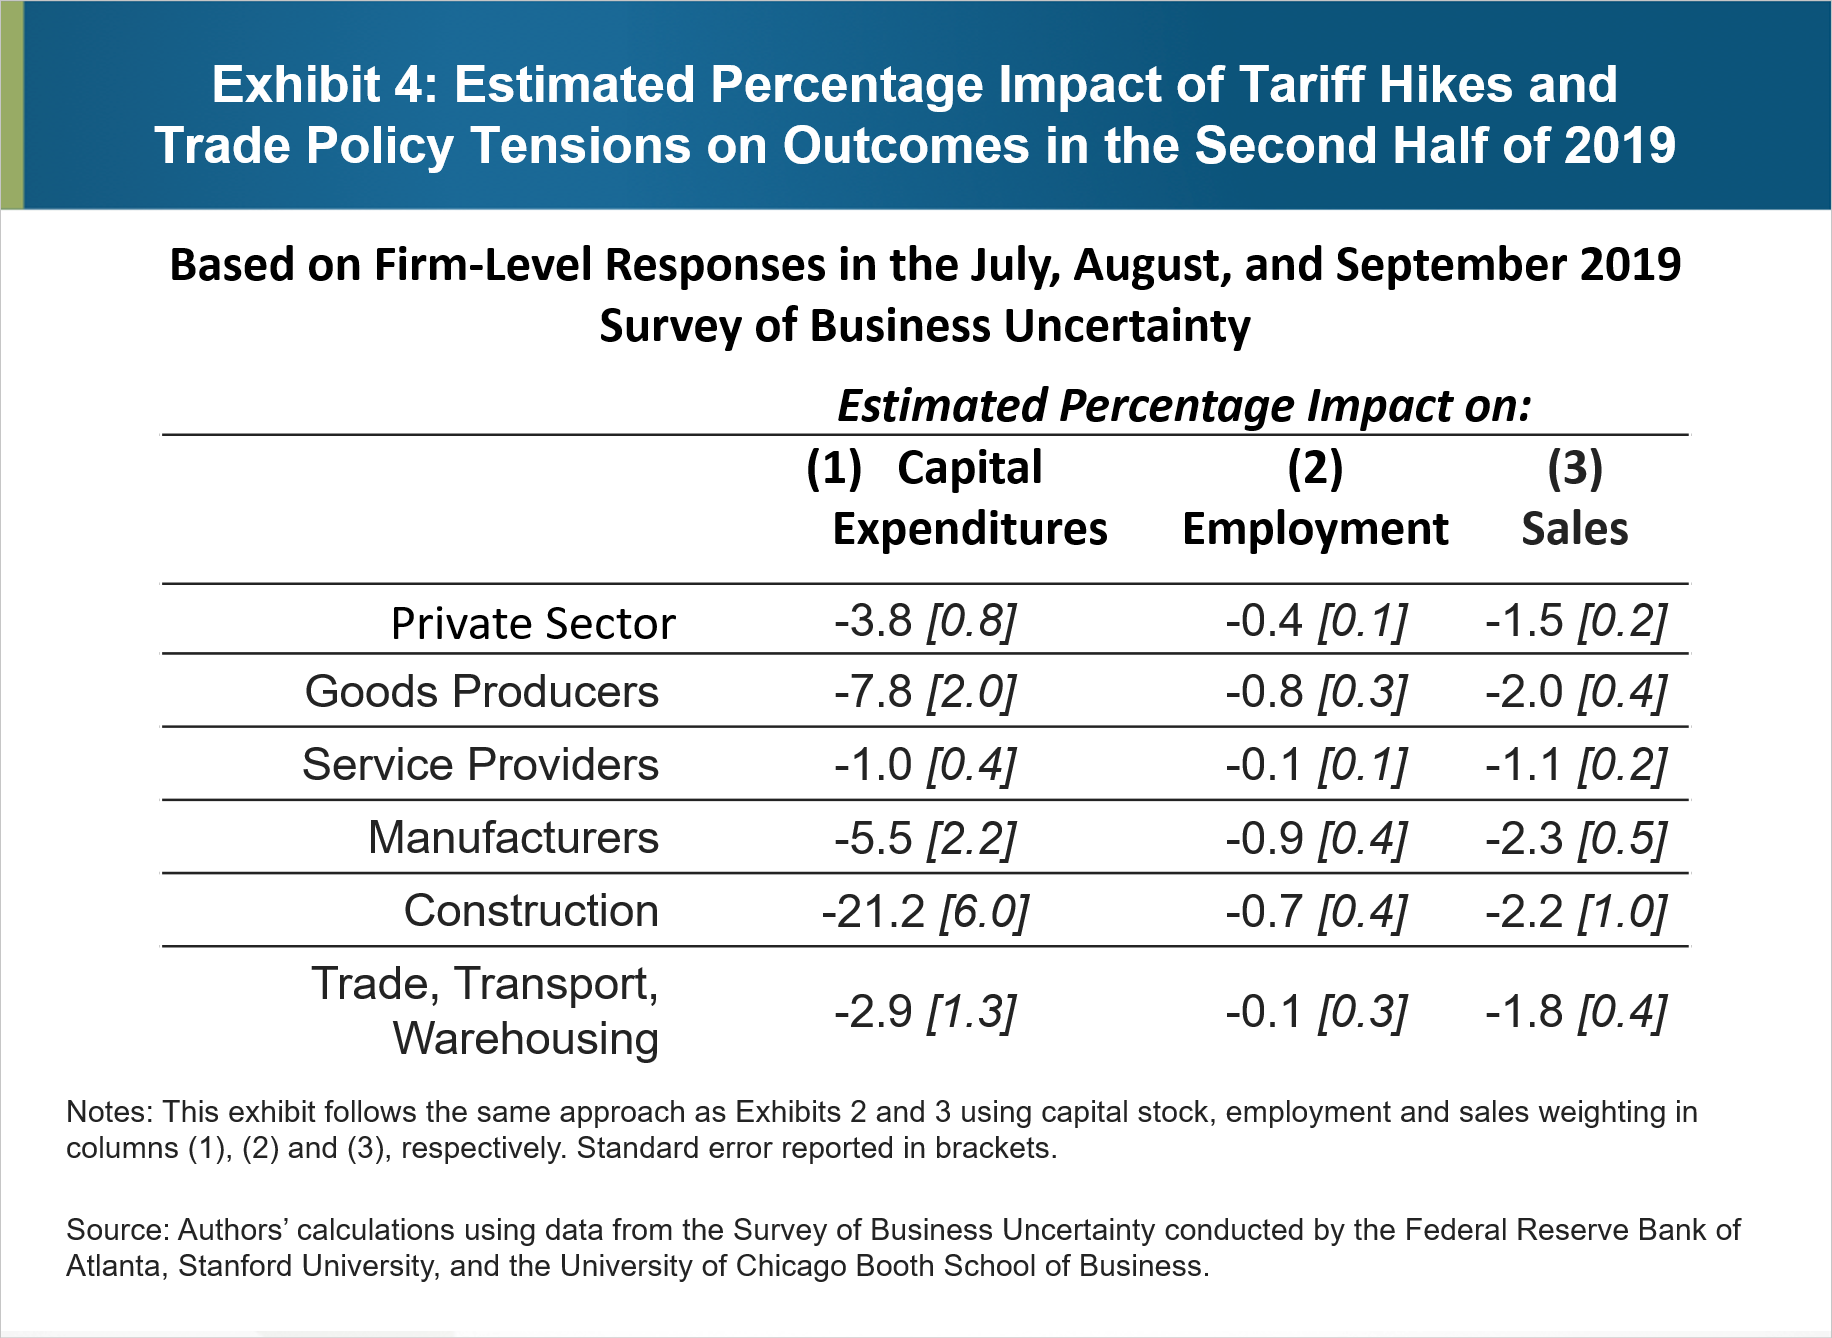 Figura 4: Impatto percentuale stimato degli aumenti tariffari e delle tensioni sulla politica commerciale sui risultati nella seconda metà del 2019